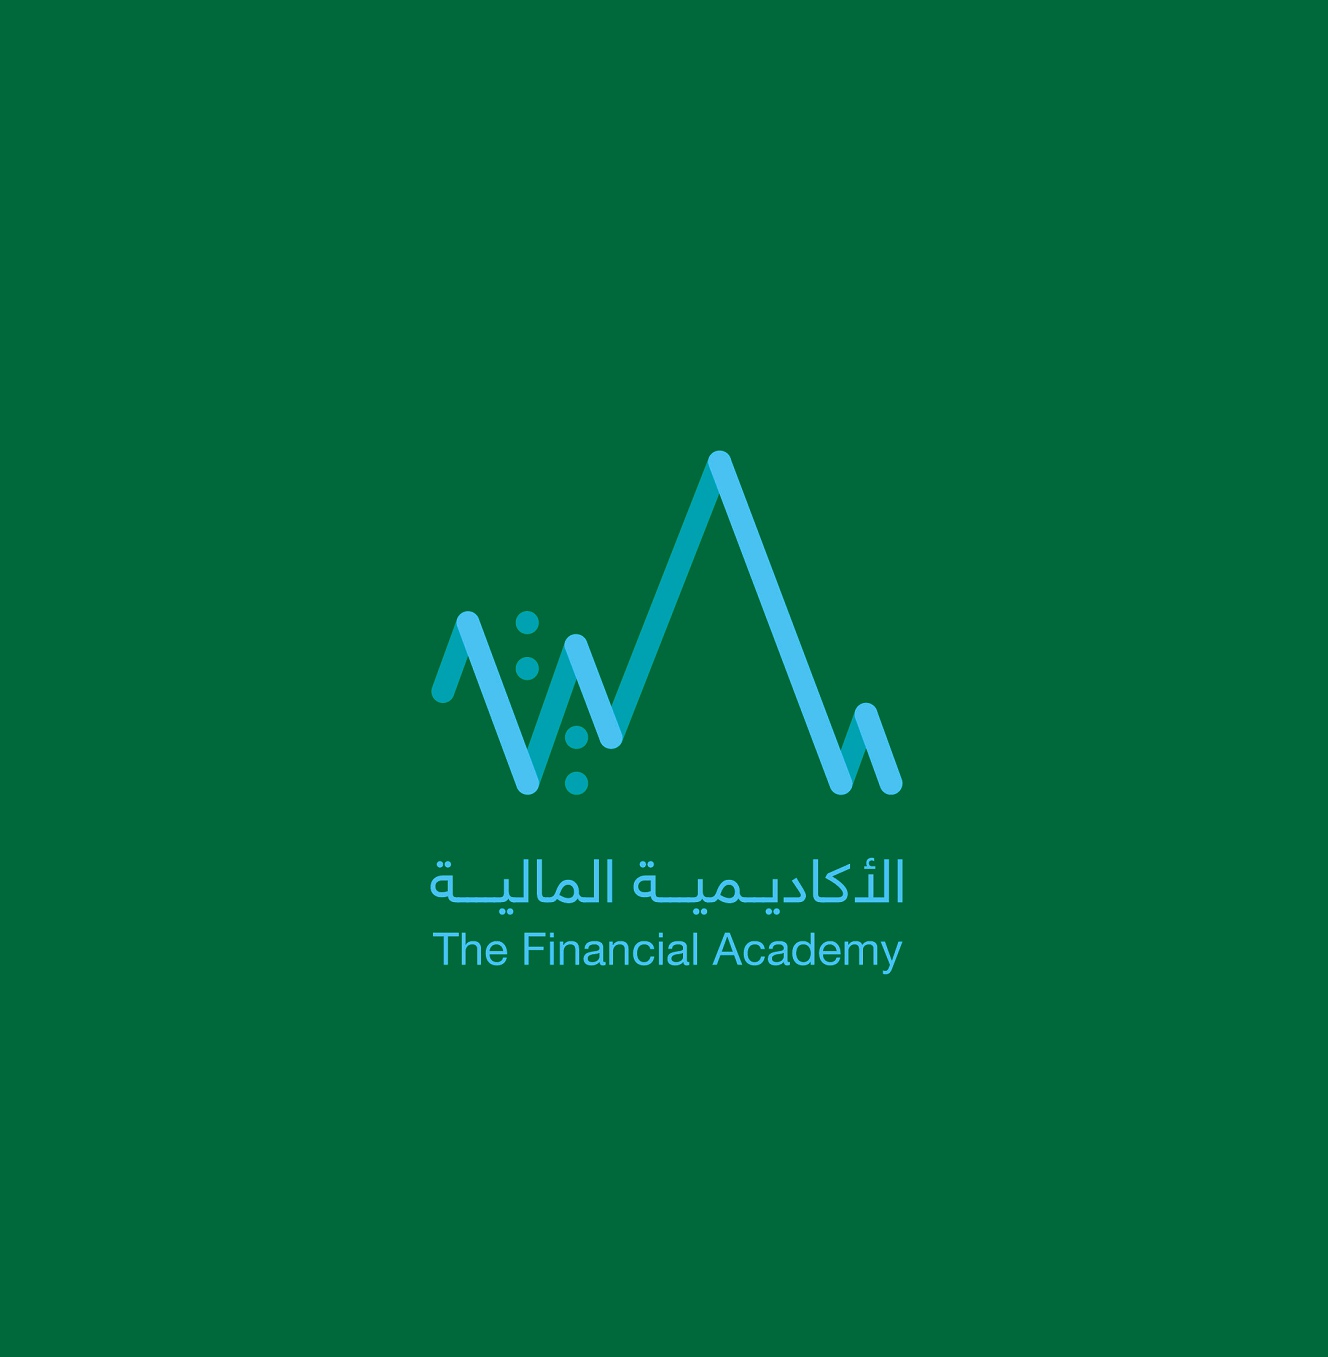 الأكاديمية المالية تطلق النسخة الثانية من الشهادة المهنية في أساسيات المصرفية الإسلامية